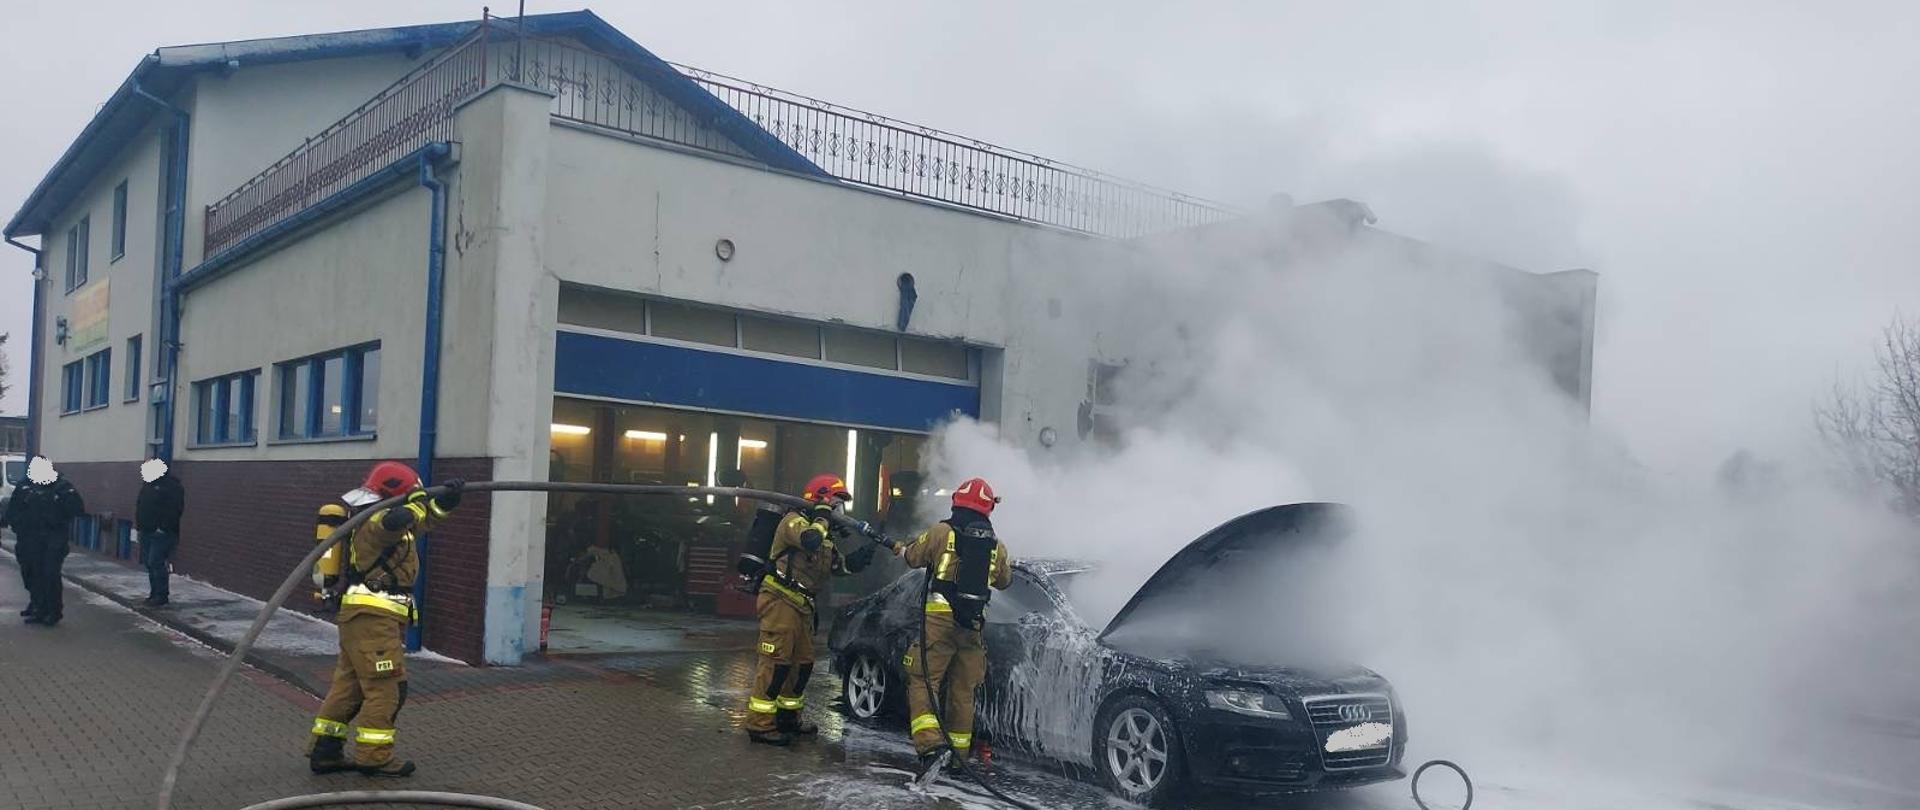 Zdjęcie przedstawia palący się samochód osobowy, który zaparkowany jest przed budynkiem warsztatu samochodowego. Strażacy gaszą pożar podając wodę oraz pianę na palący się pojazd. Panuje zadymienie. Strażacy pracują w sprzęcie ochrony układu oddechowego. 